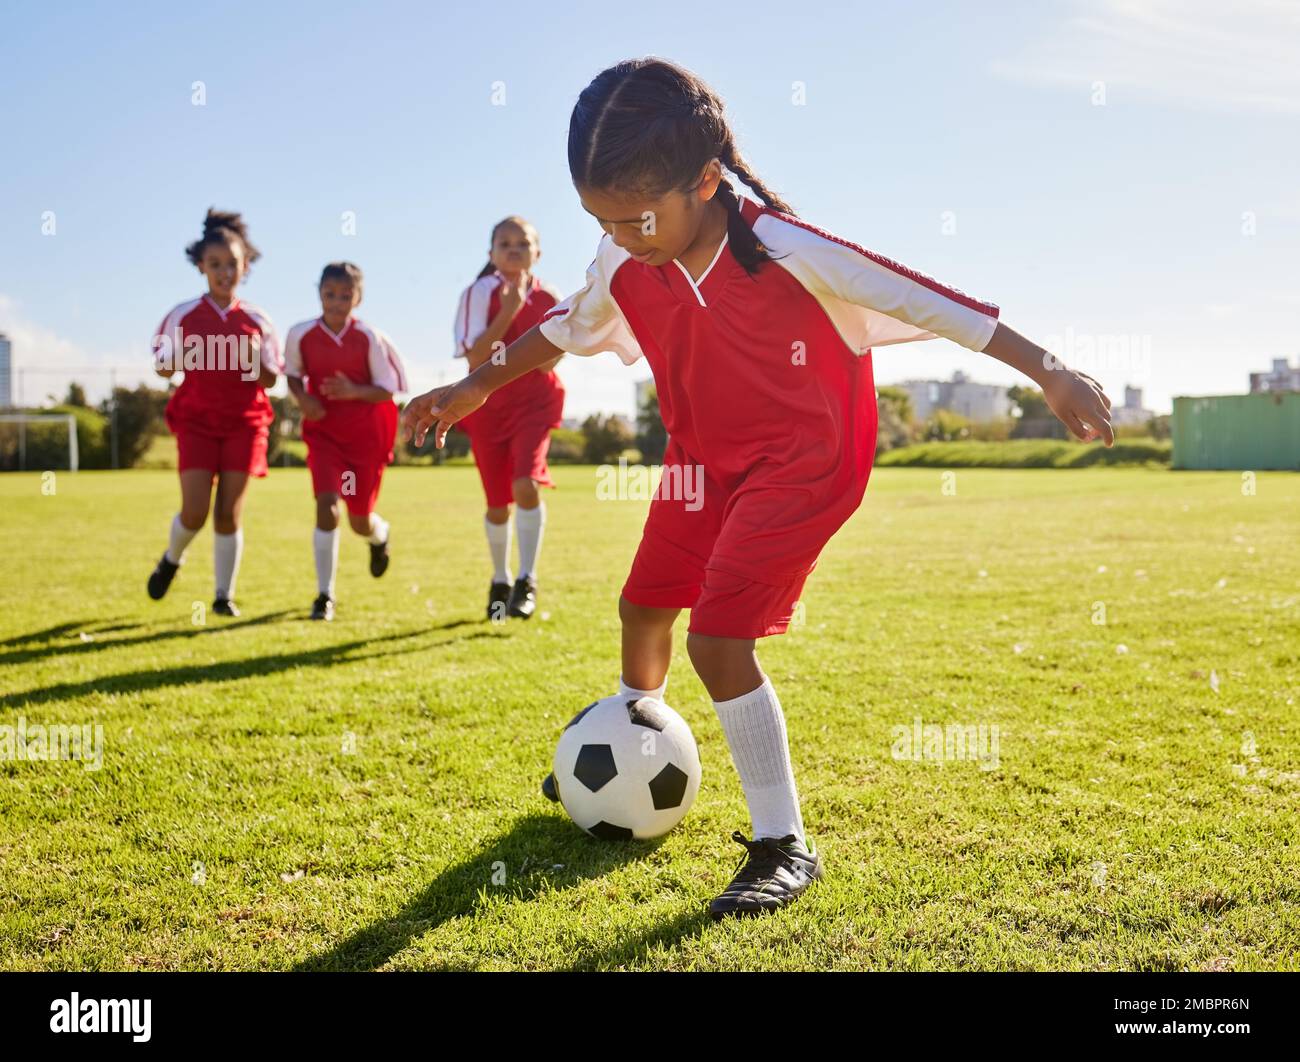 Football, entraînement ou sport et une équipe de filles jouant avec un ballon ensemble sur un terrain de pratique. Fitness, football et herbe avec les enfants en train de courir ou Banque D'Images